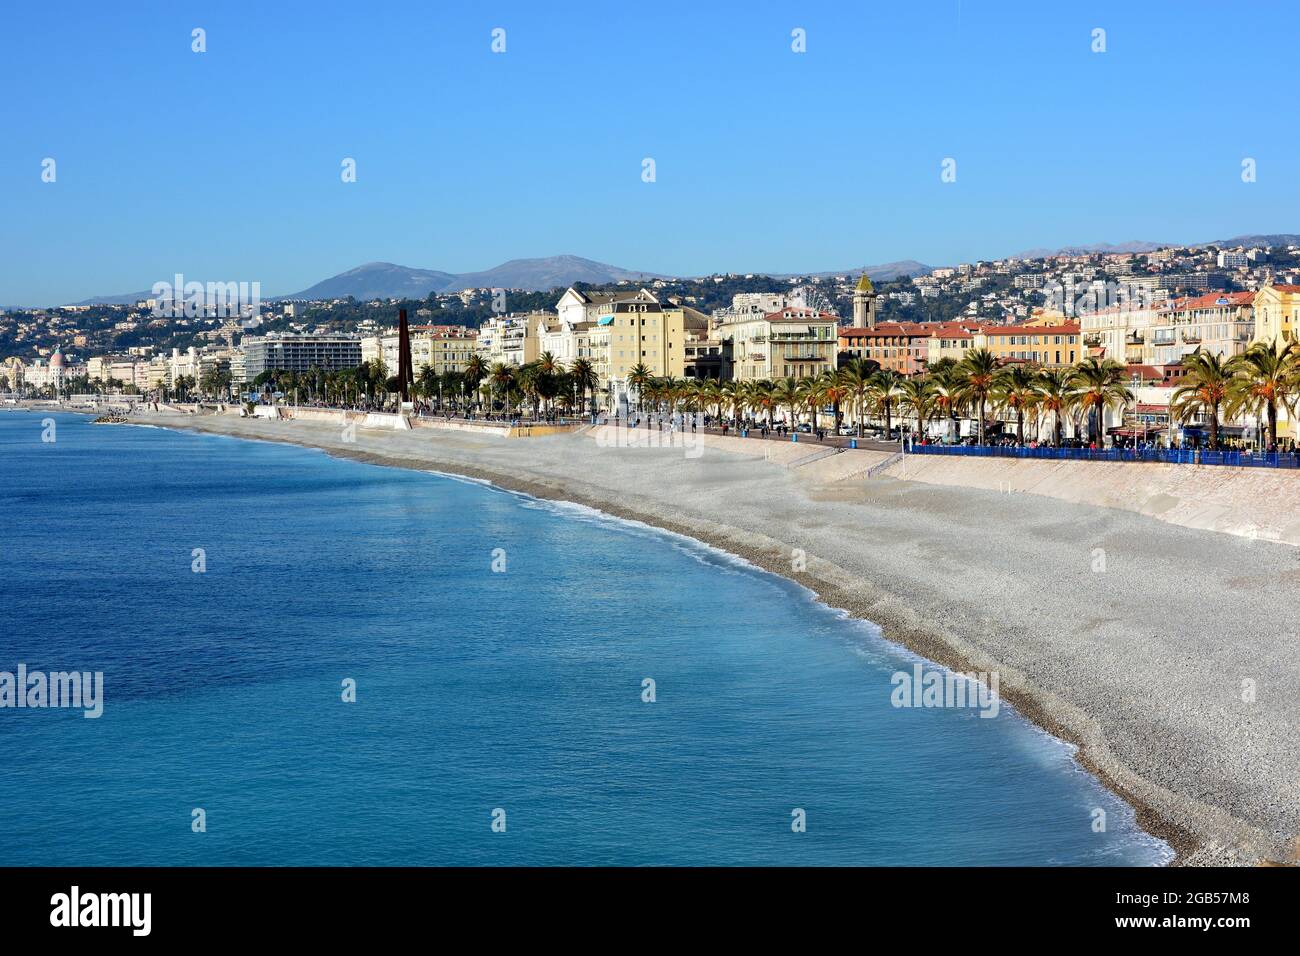 Francia, costa azzurra, la città di Nizza ha ottenuto il 27 luglio 2021 le sue classifiche al patrimonio mondiale dell'UNESCO. Foto Stock